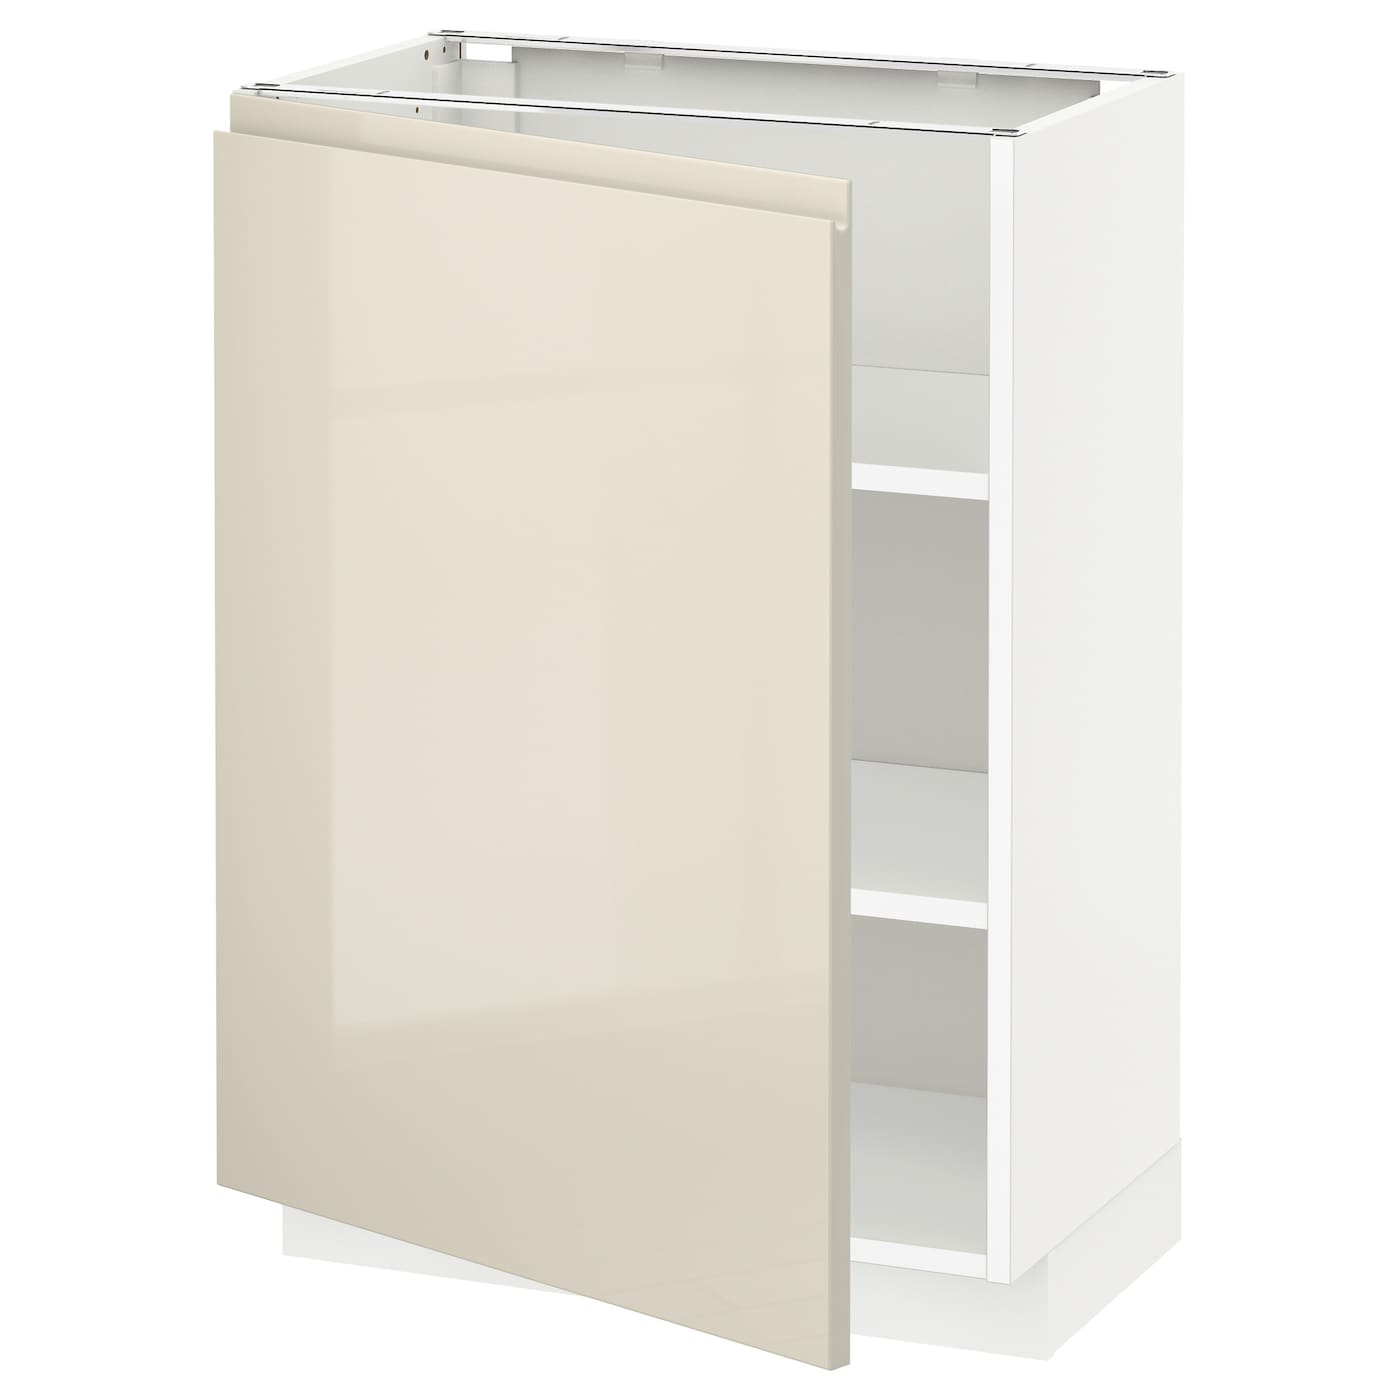 Напольный шкаф - IKEA METOD, 88x39,5x60см, белый/светло-бежевый, МЕТОД ИКЕА